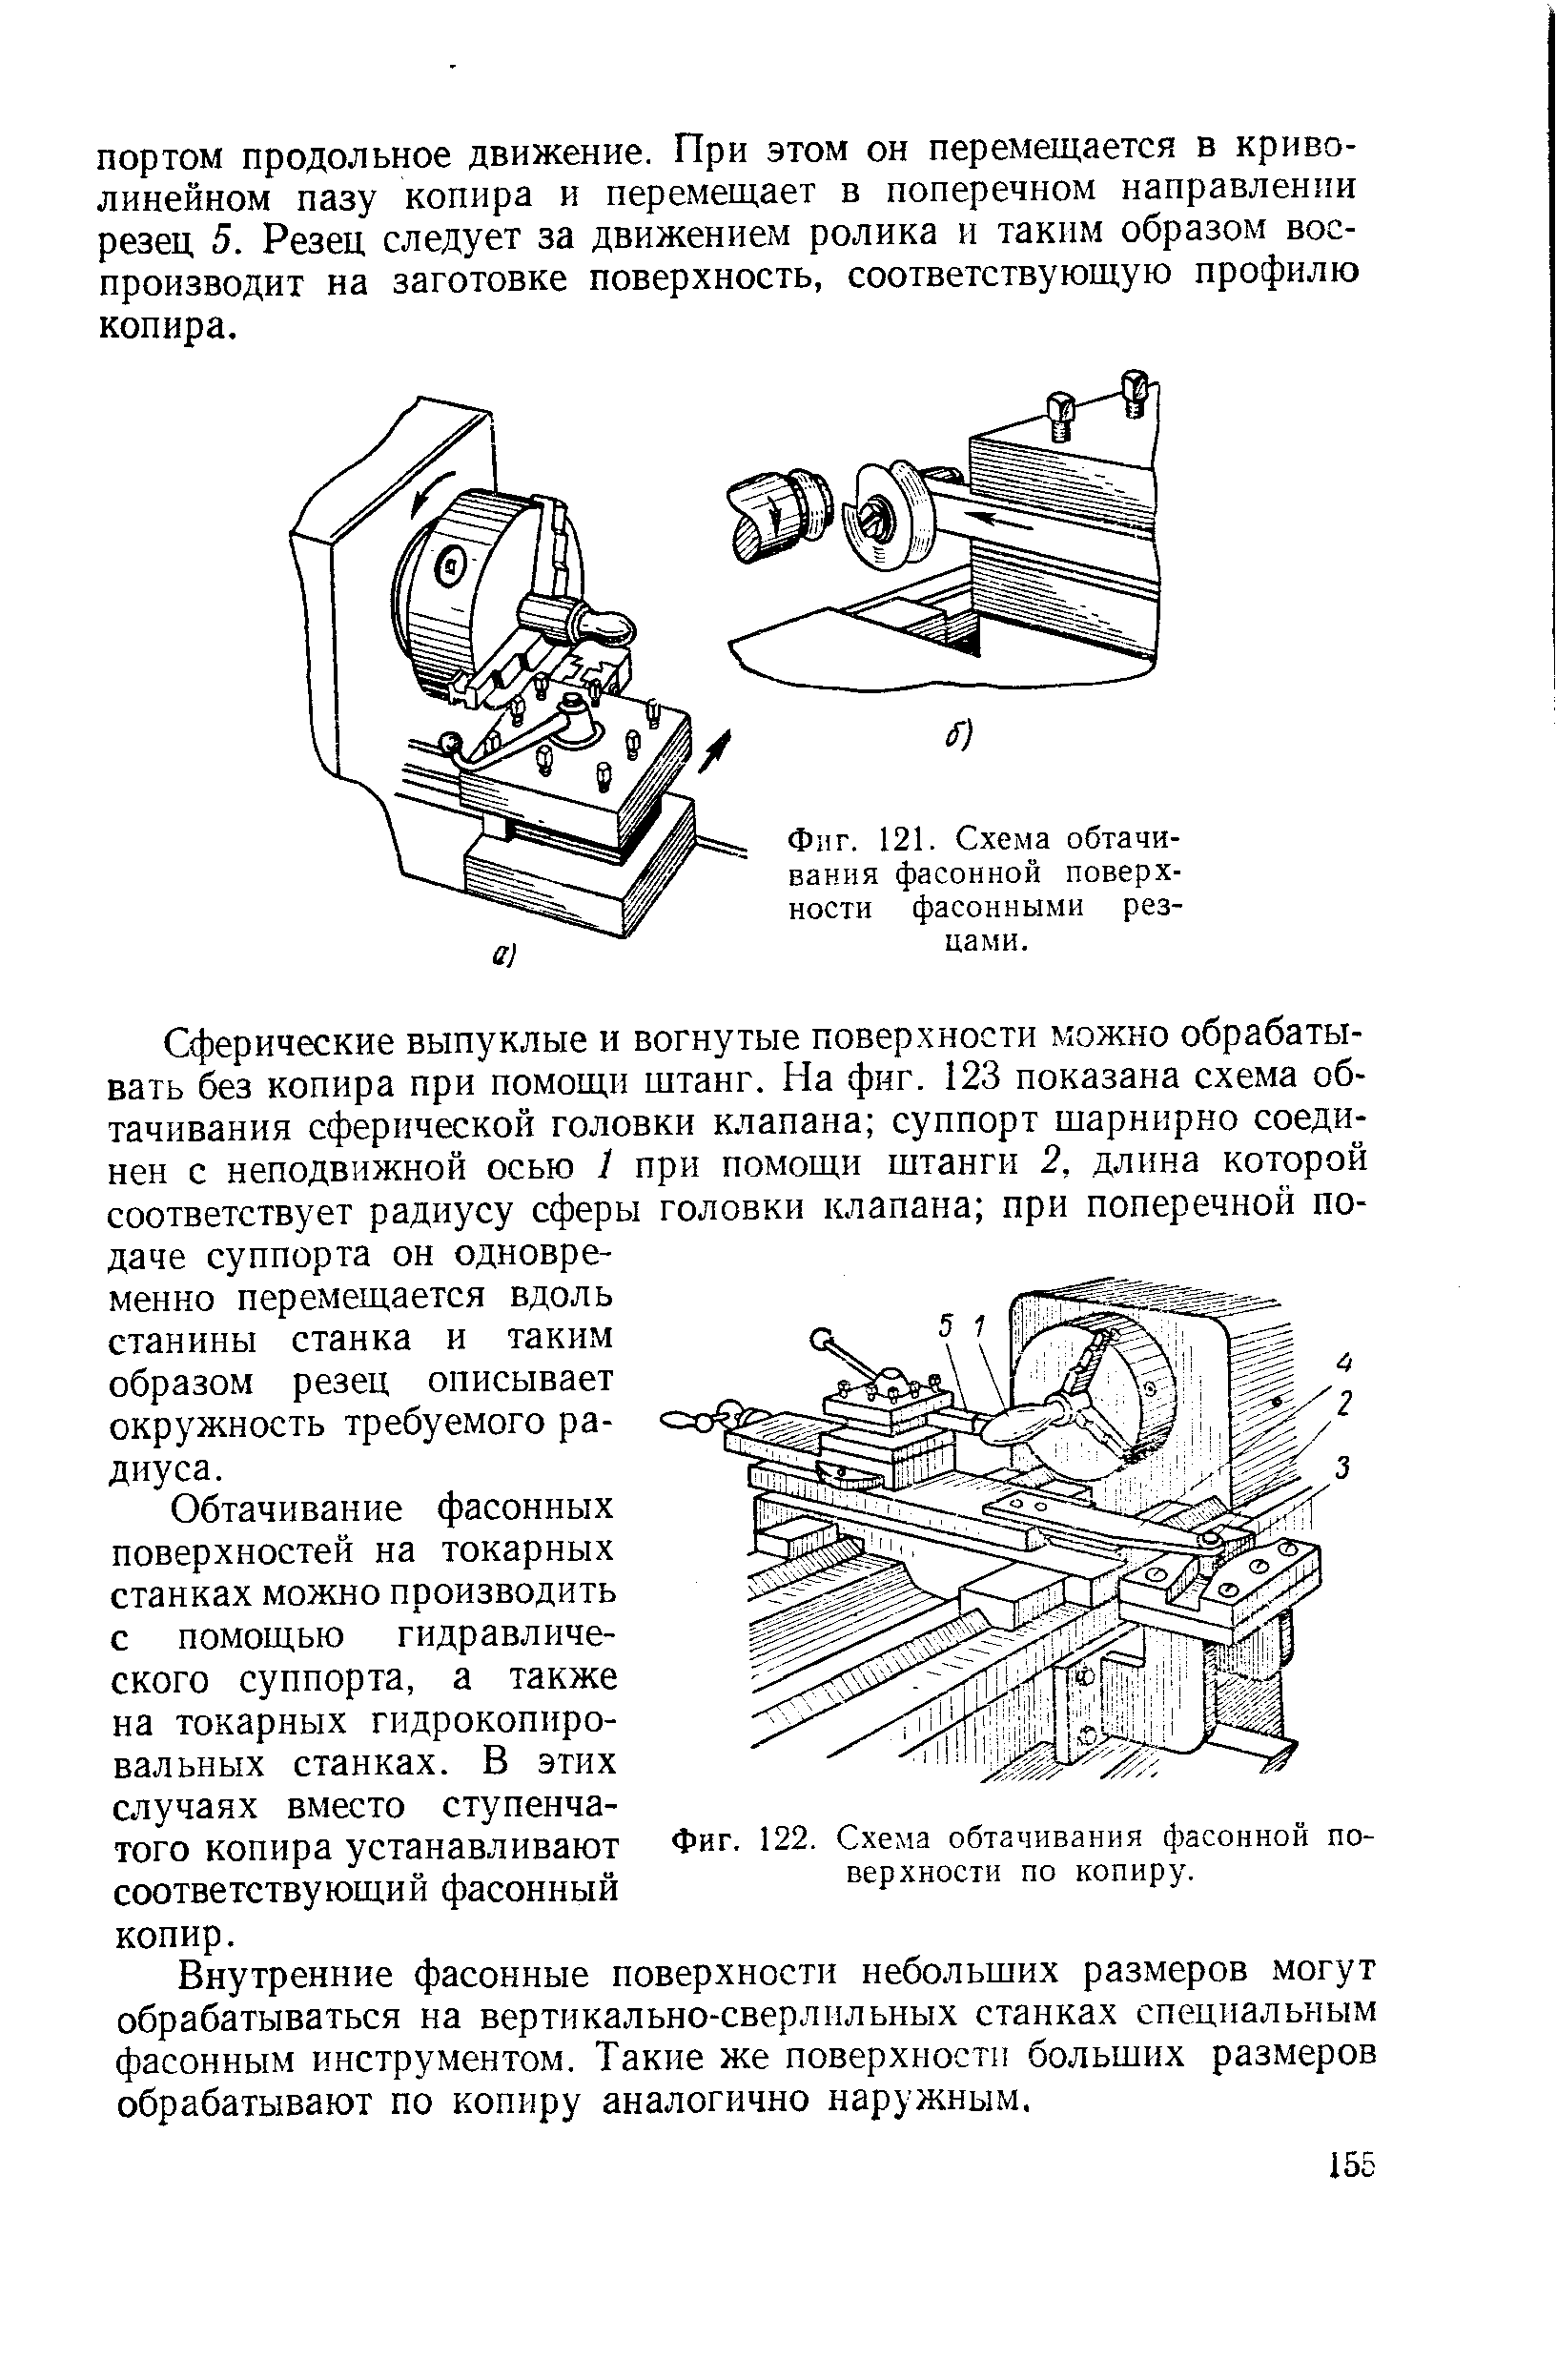 Фиг. 122. Схема обтачивания фасонной поверхности по копиру.
